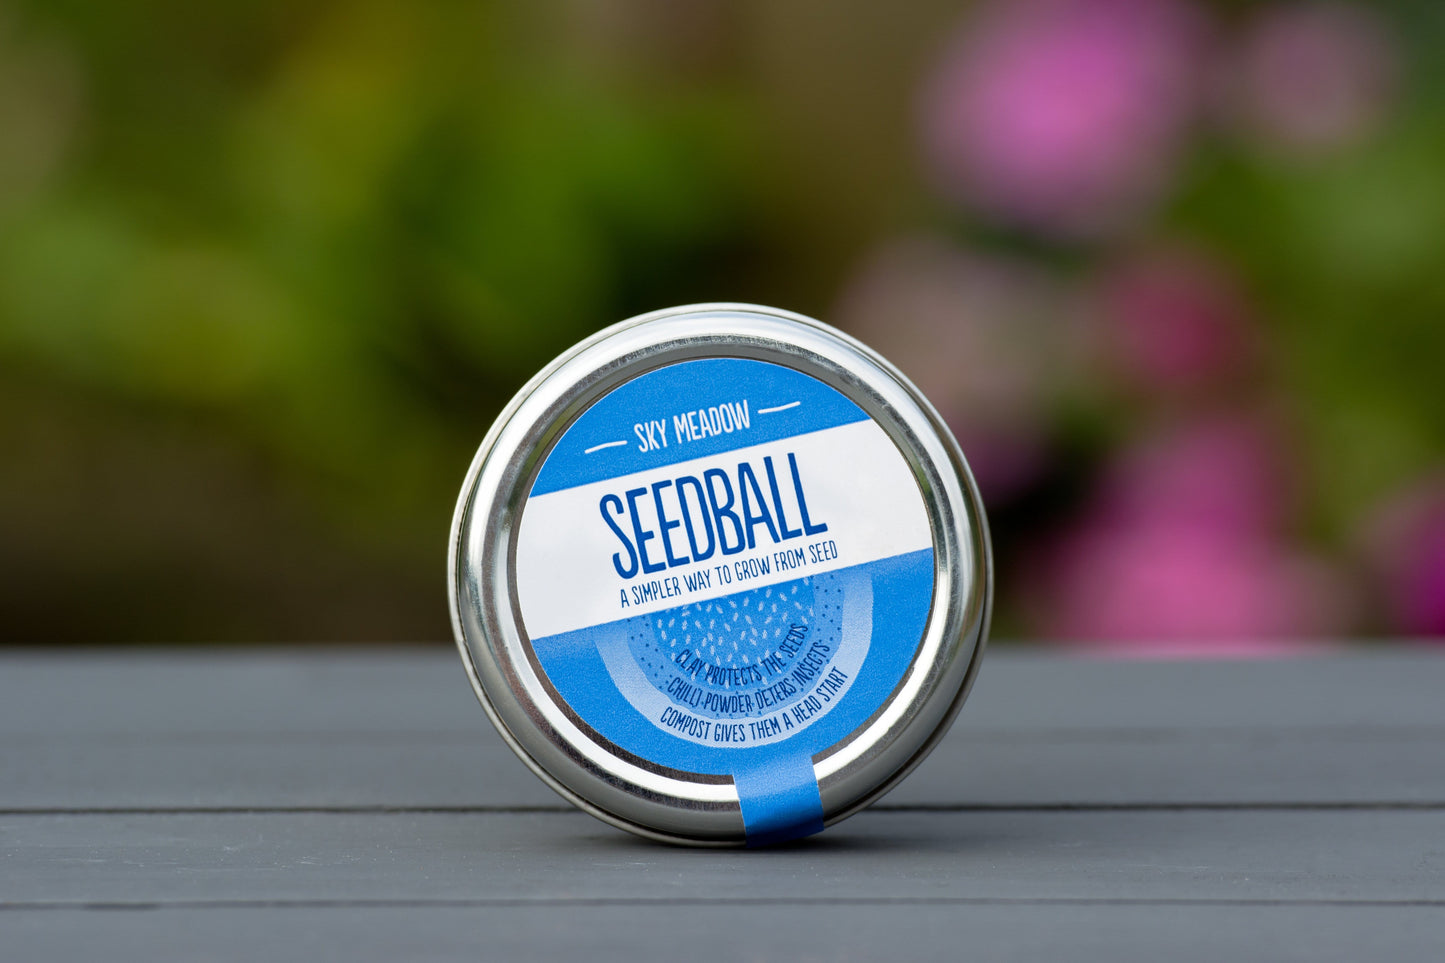 Sky Meadow Seedball Tin - ShopGreenToday